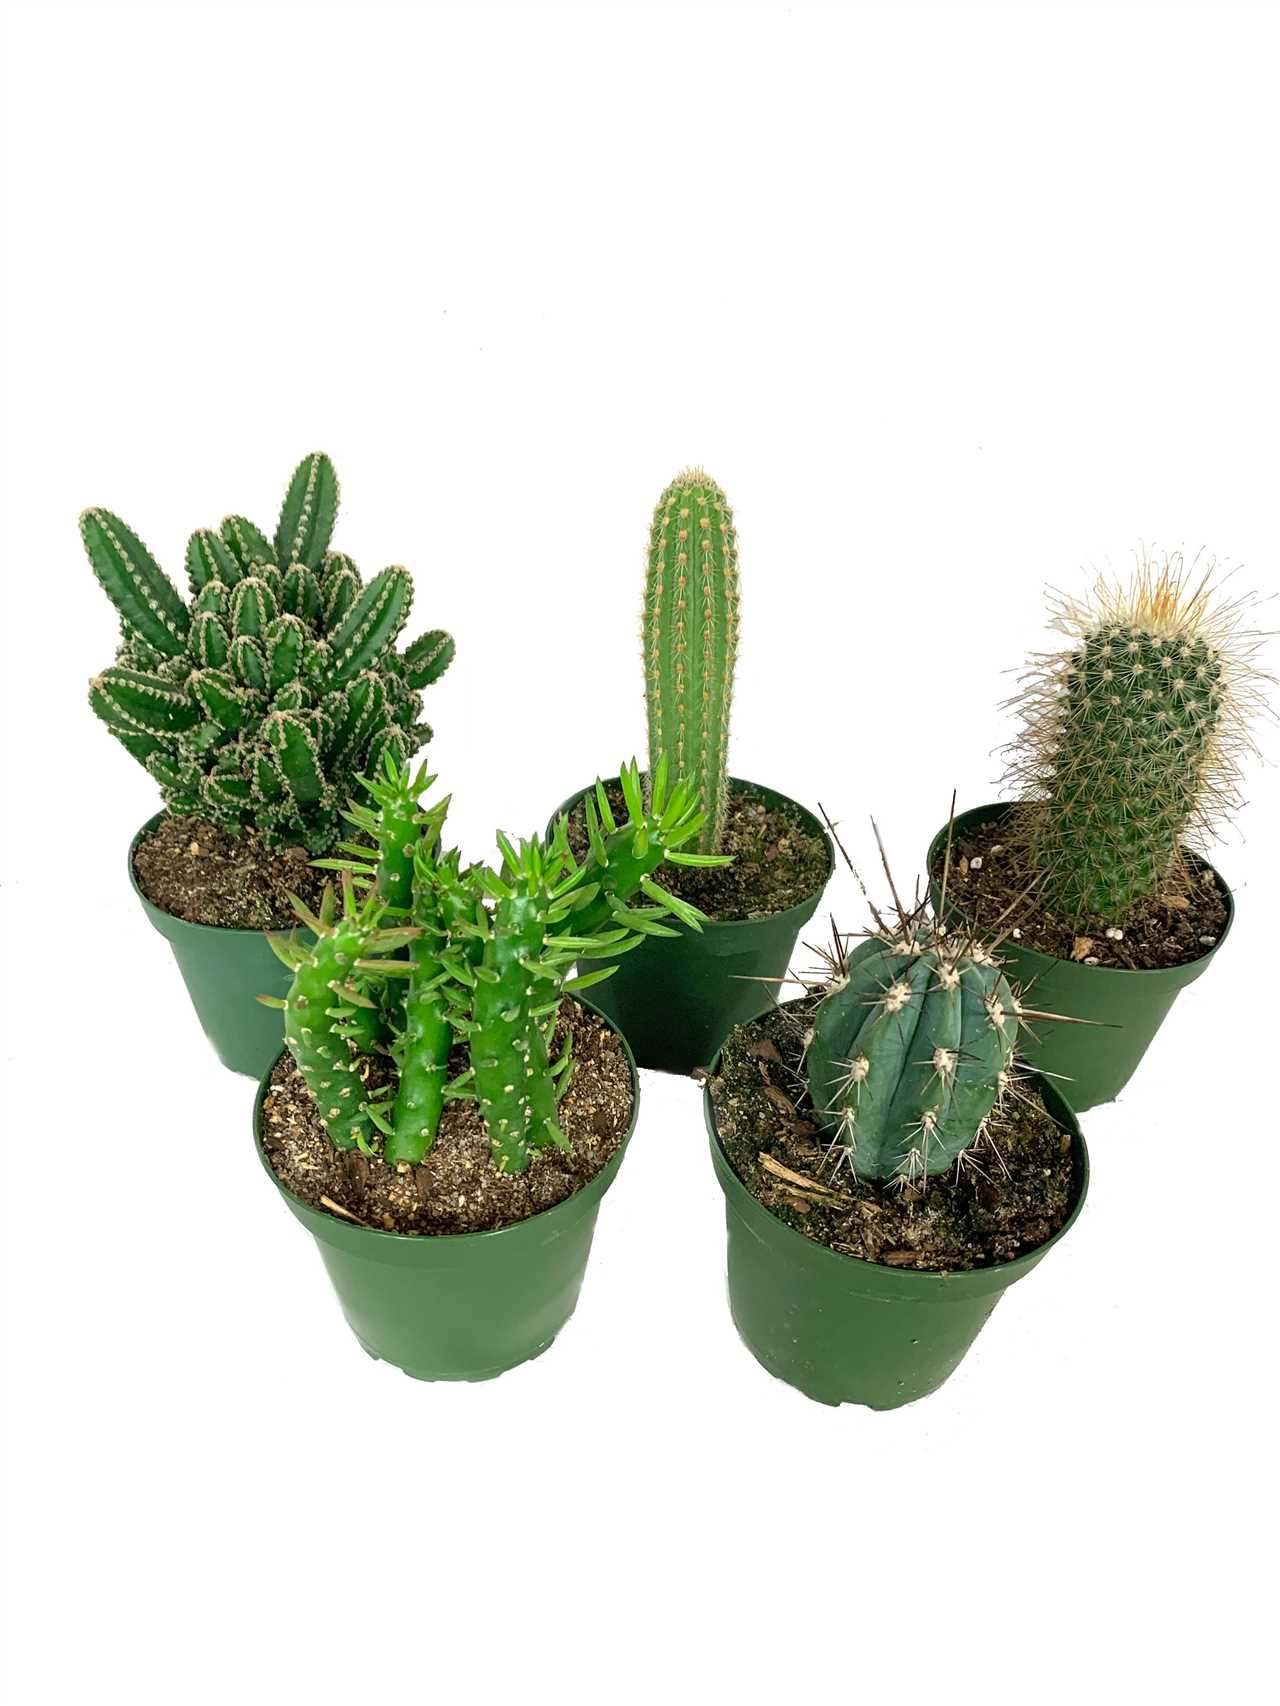 Fertilizing Your Cactus